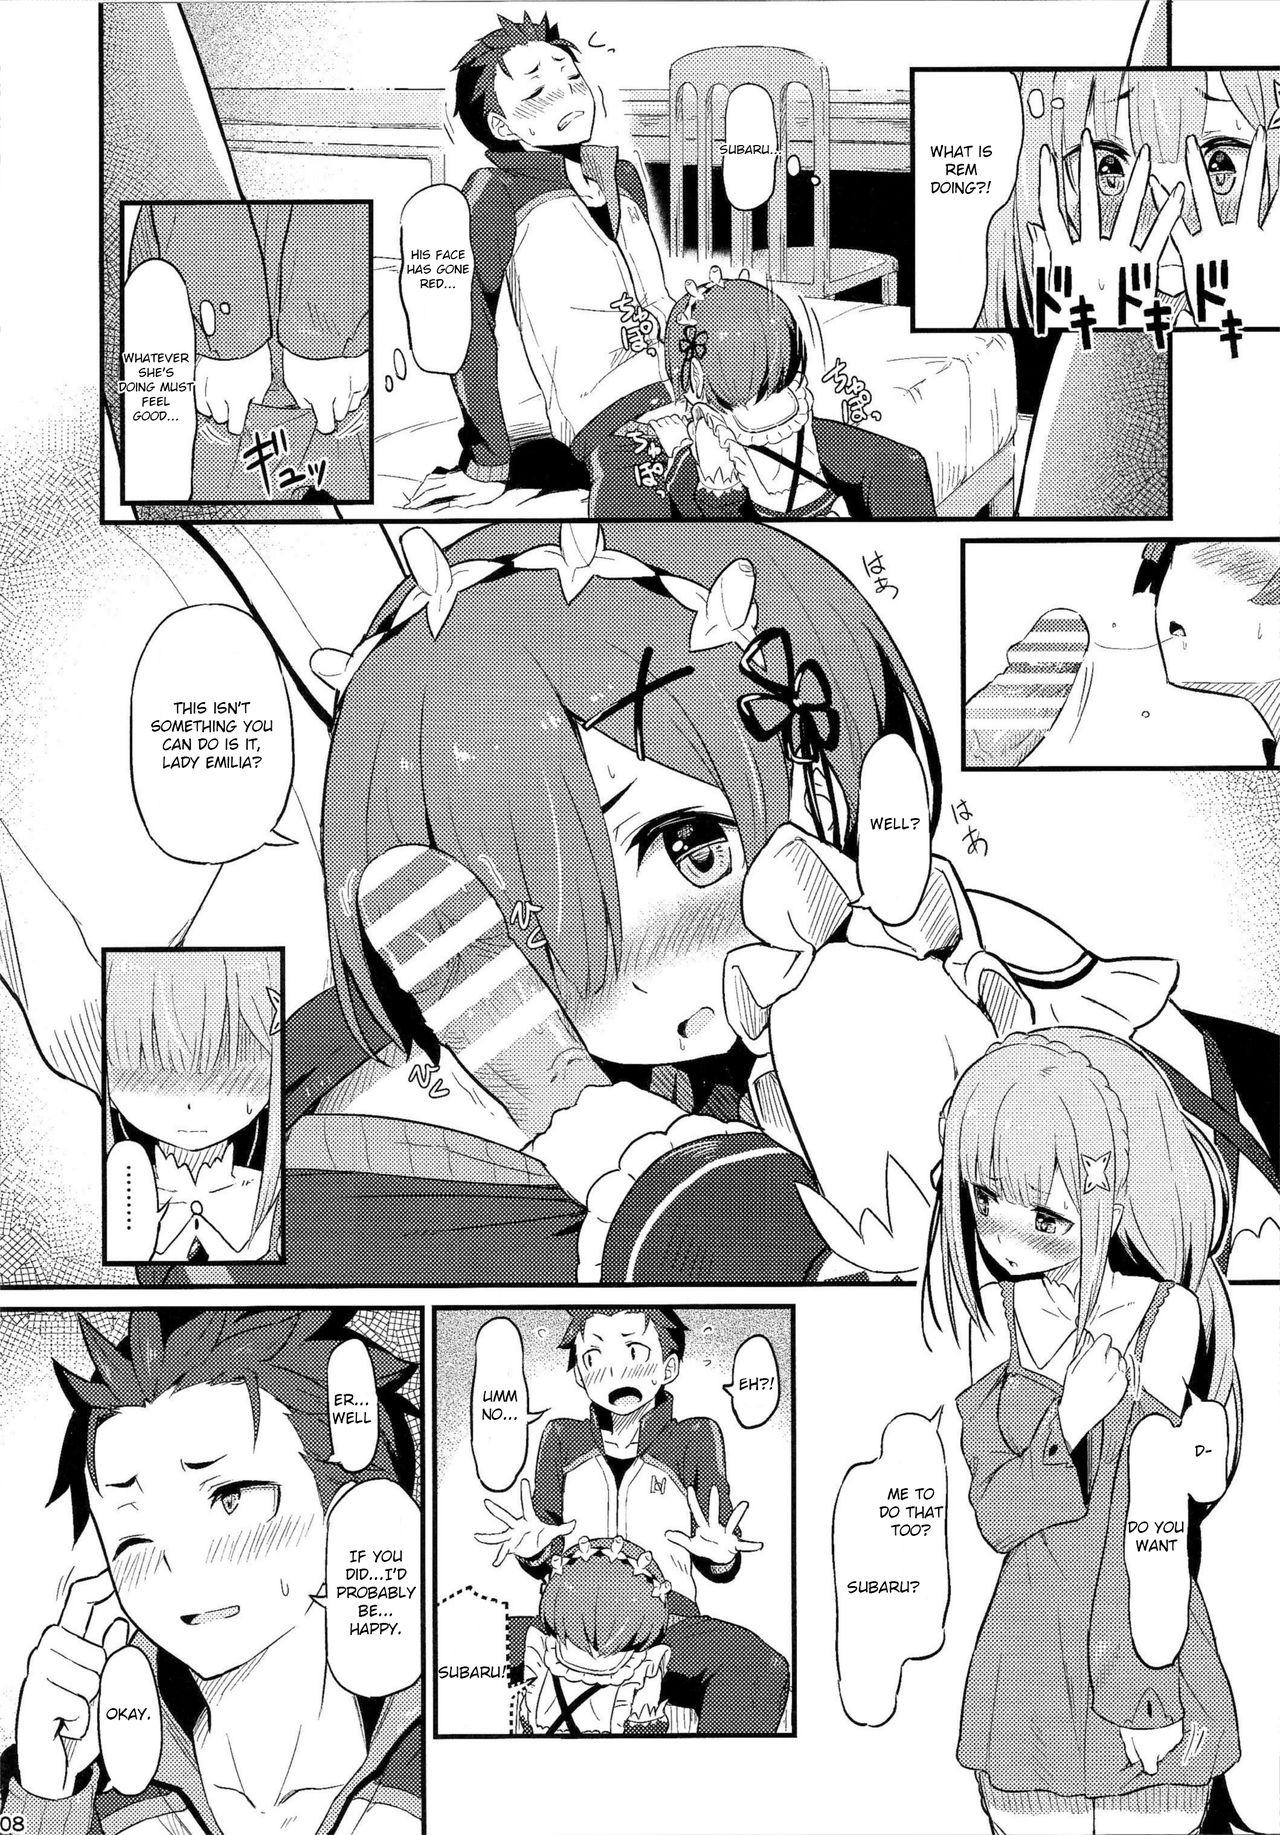 Whipping Rem no Emilia Kuttsuke Daisakusen - Re zero kara hajimeru isekai seikatsu Amazing - Page 9